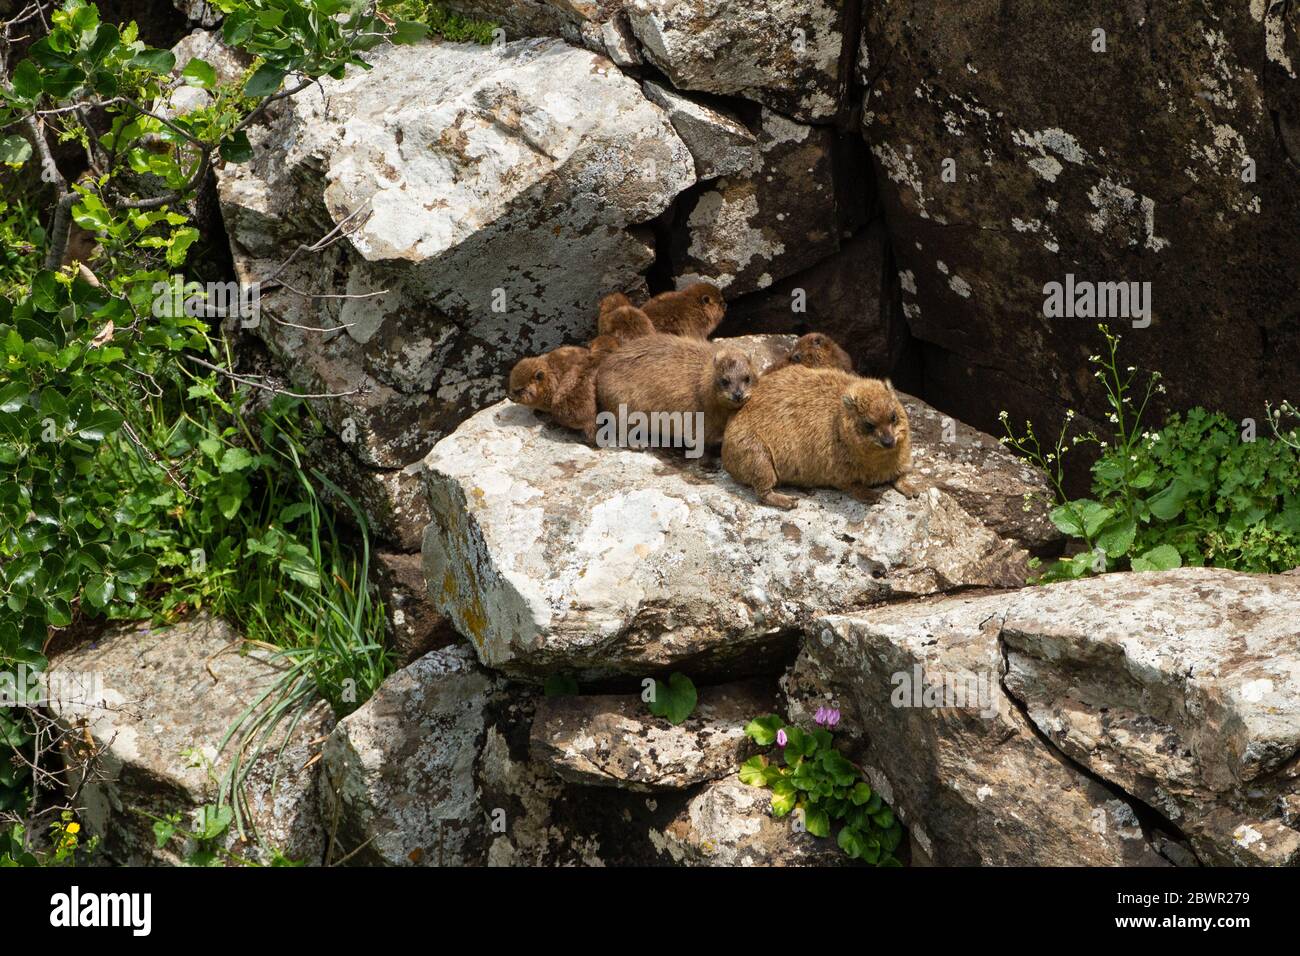 Mères et chiots de l'hyrax de roche dans le Golan (Procavia capensis),le cap hyrax, dassie Banque D'Images